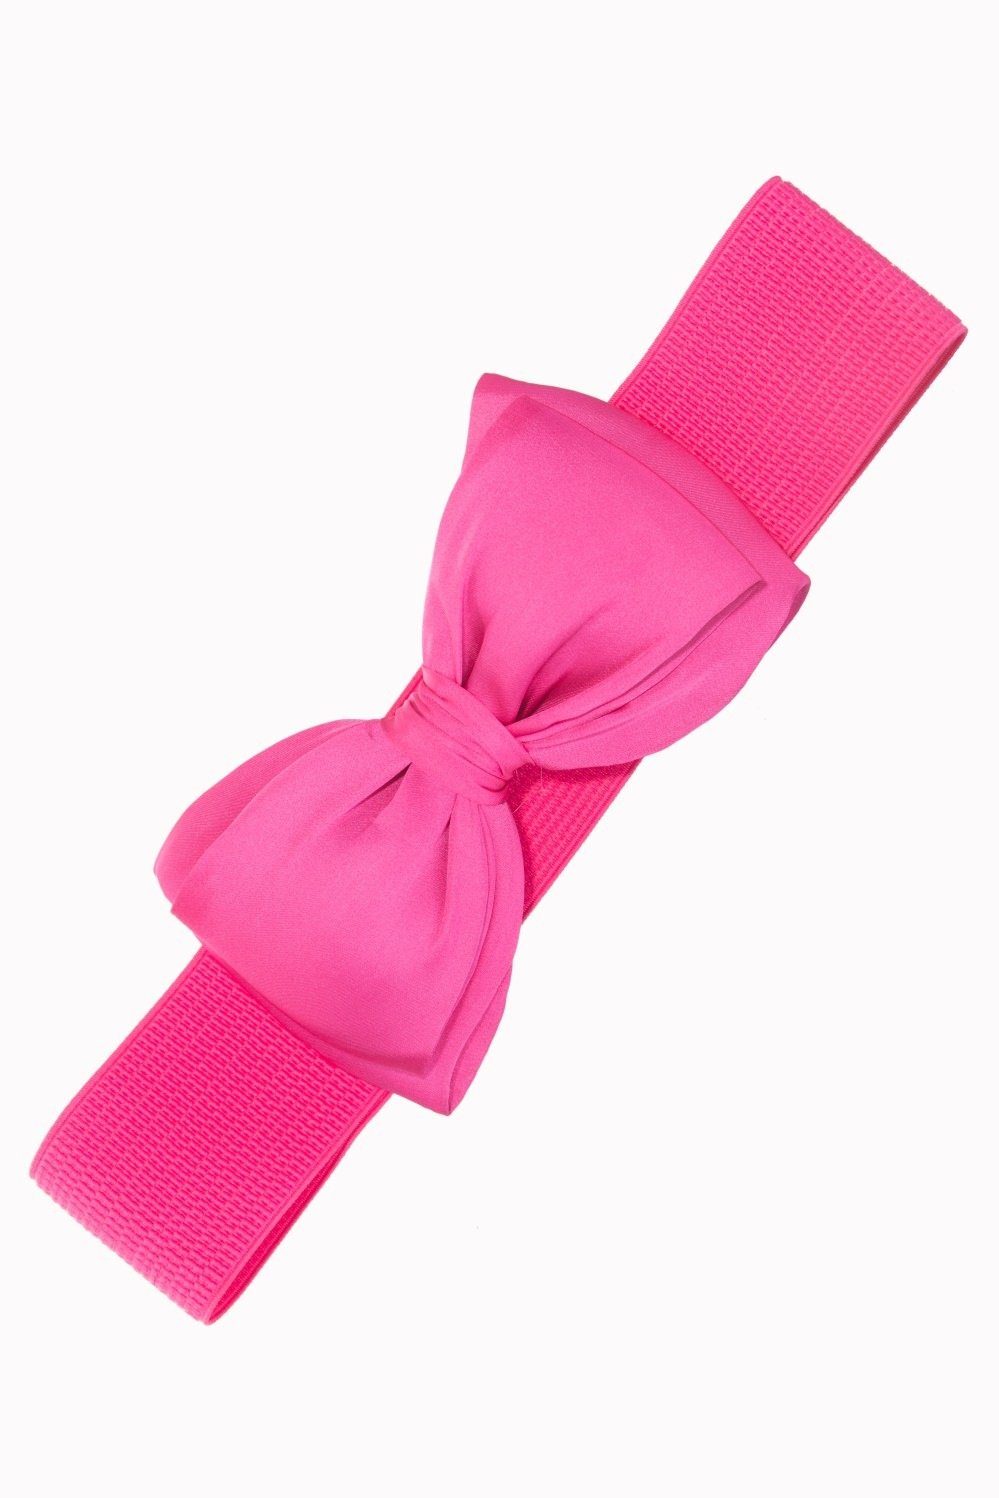 Vintage Stretchgürtel Schleife Bella Belt Taillengürtel Retro Pink Banned